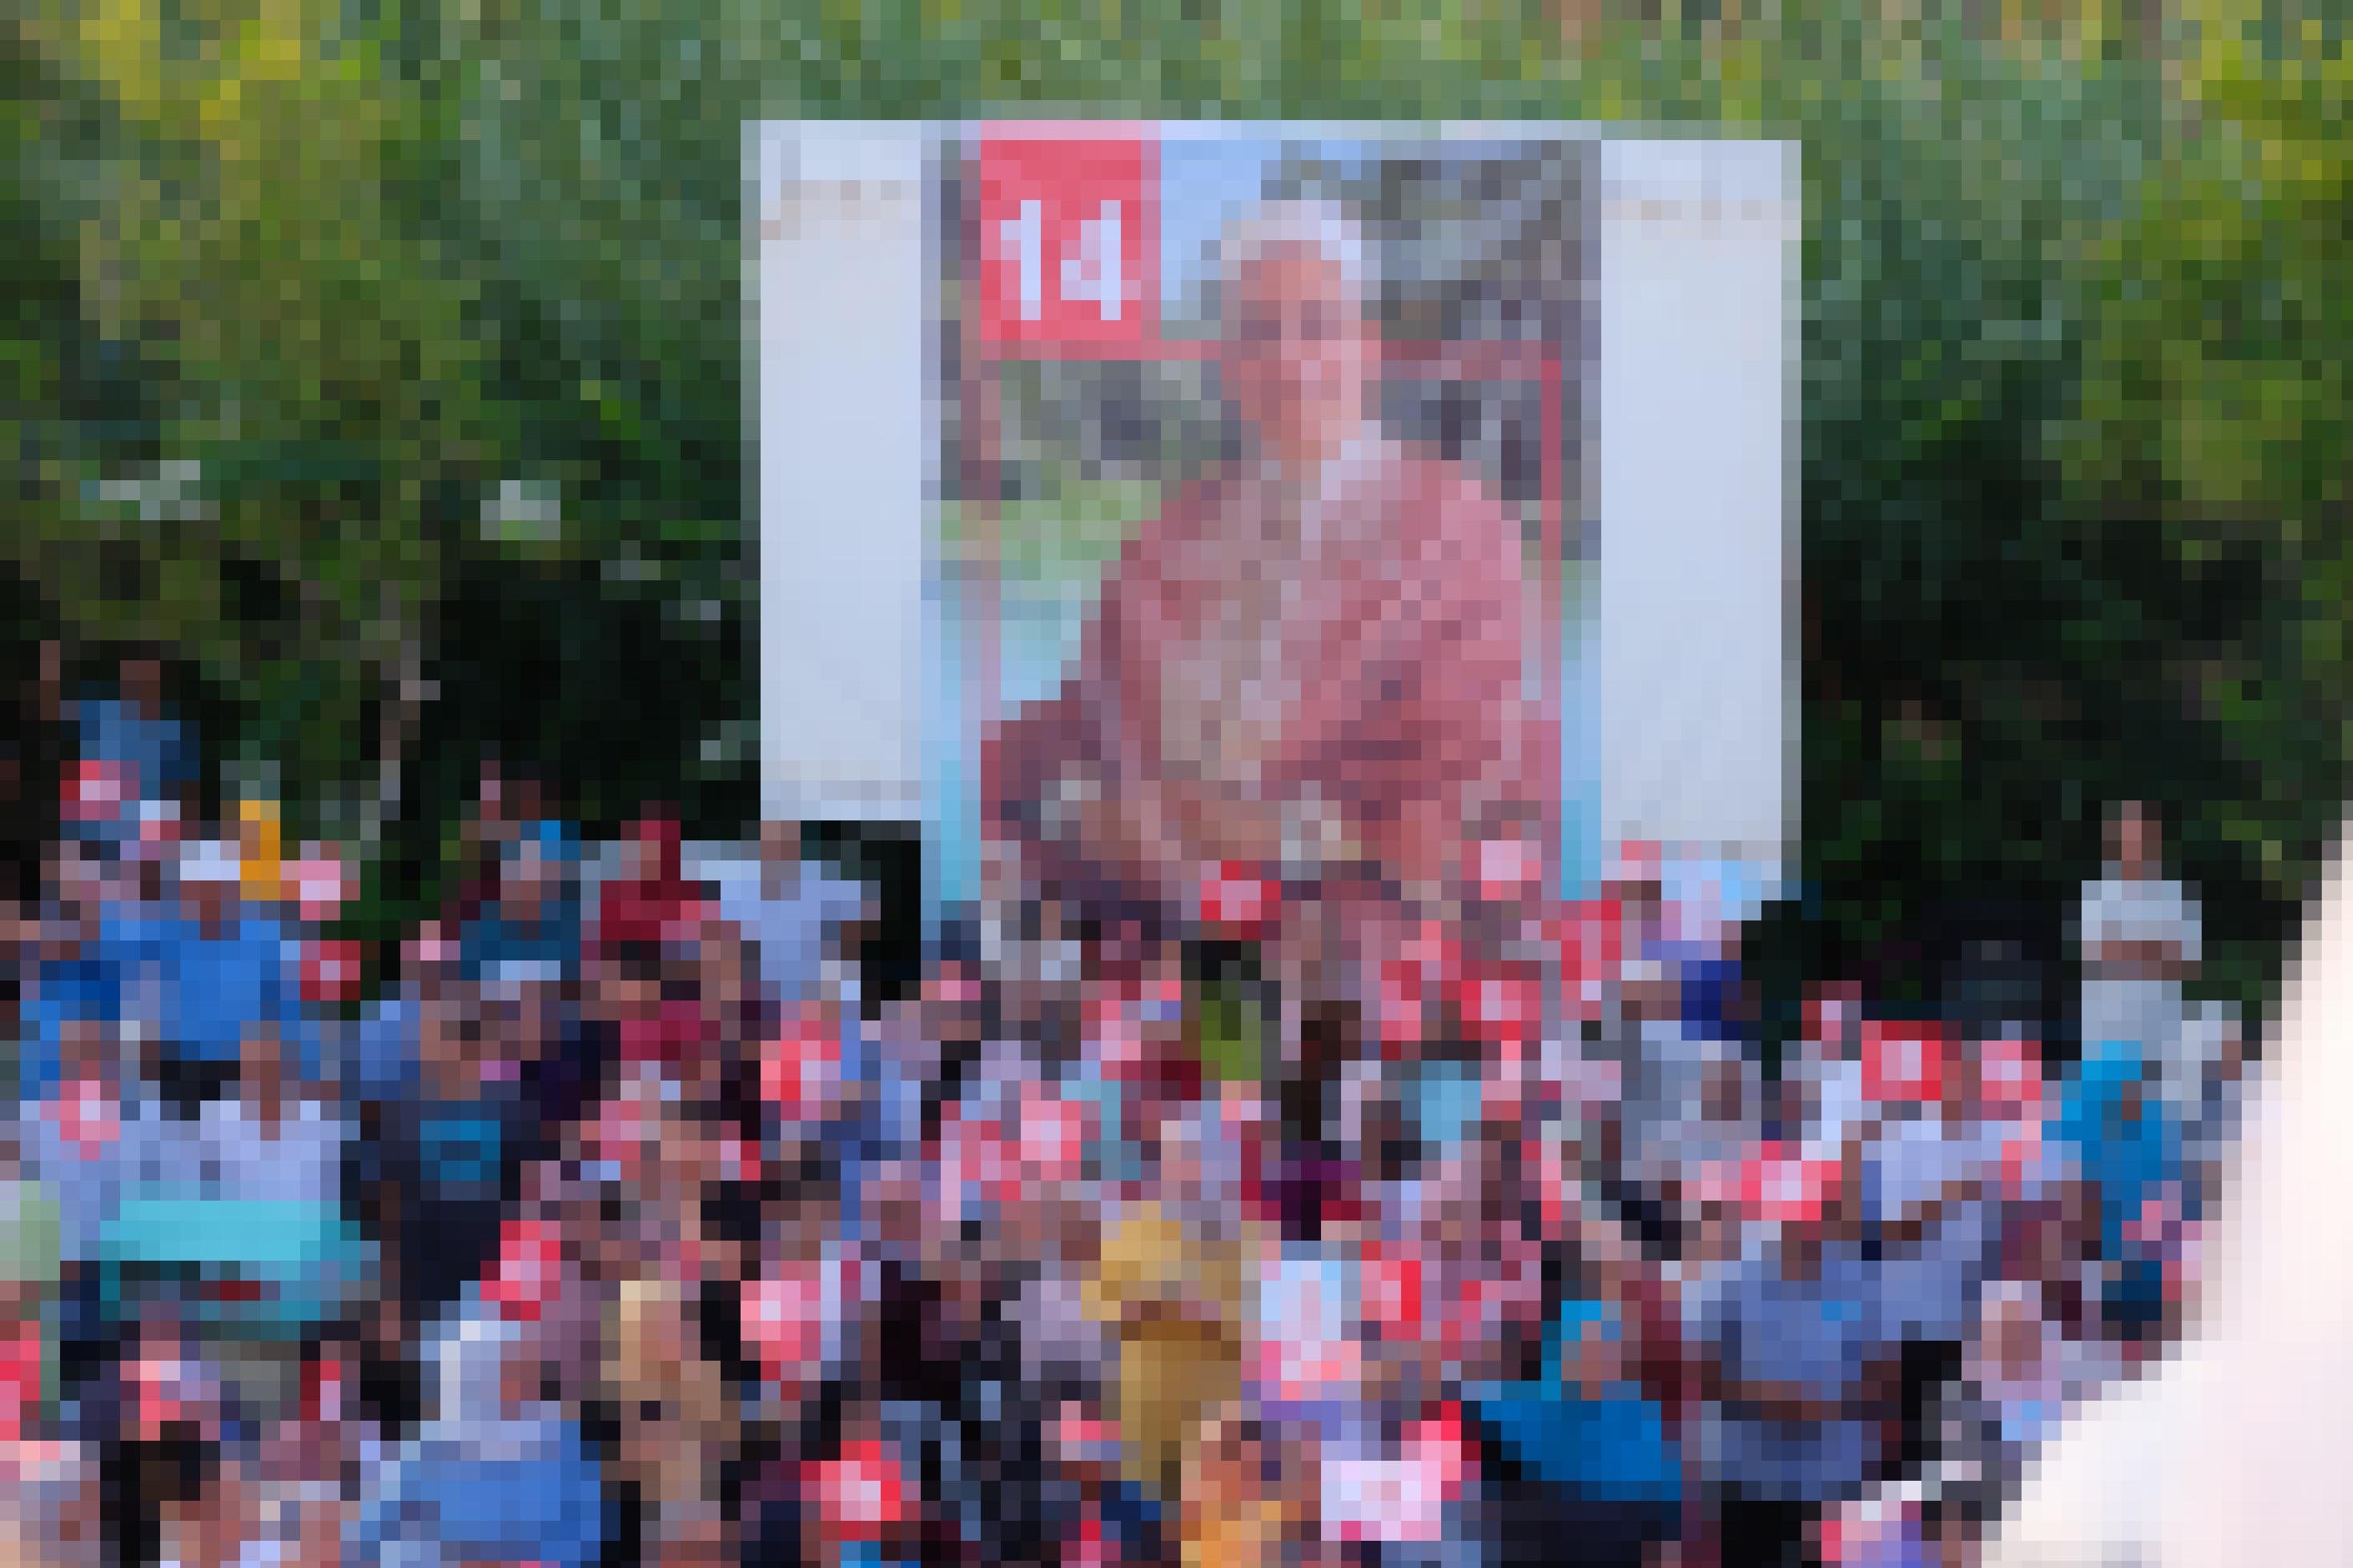 Wahlkampfmeeting der muslimisch-konservativen Ennahdha-Partei in einem Park in Gabes, Tunesien, im September 2019. Eine Gruppe von Personen schwenkt Fähnchen, im Hintergrund hängt ein großes Transparent von Abdelfattah Mourou, Präsidentschaftskandidat der Partei